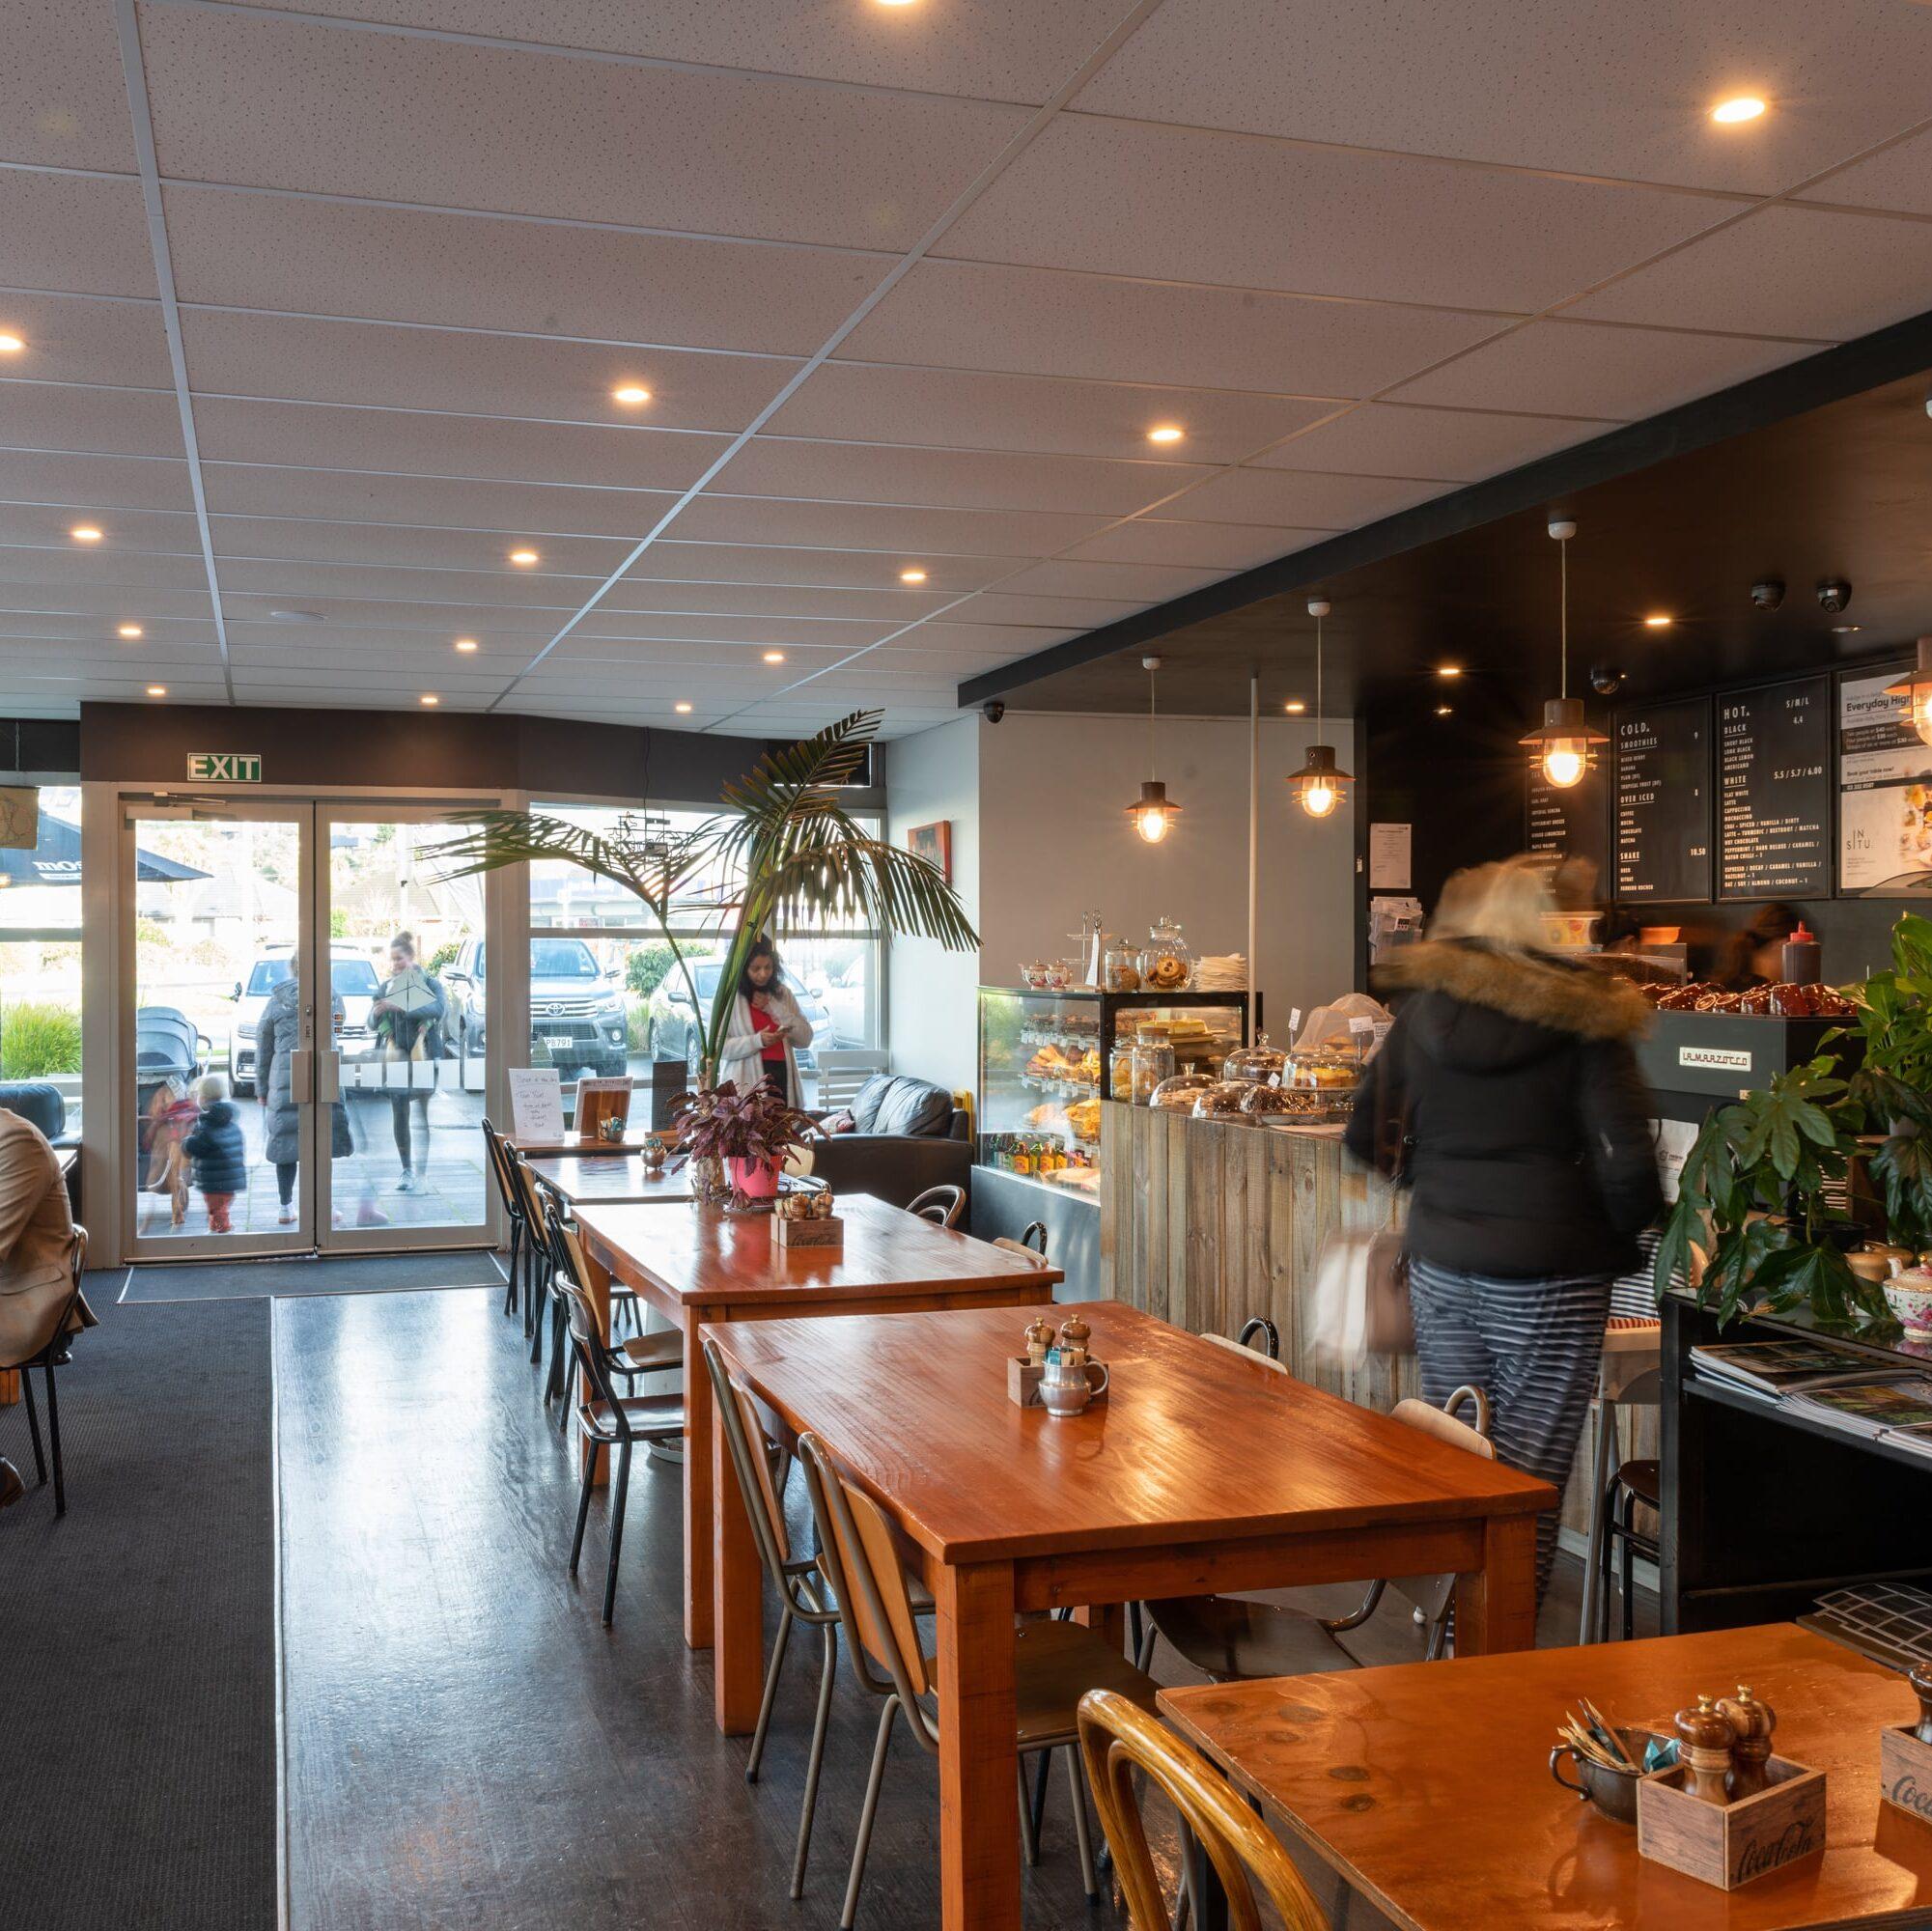 InSitu Cafe - Cafe interior - Christchurch